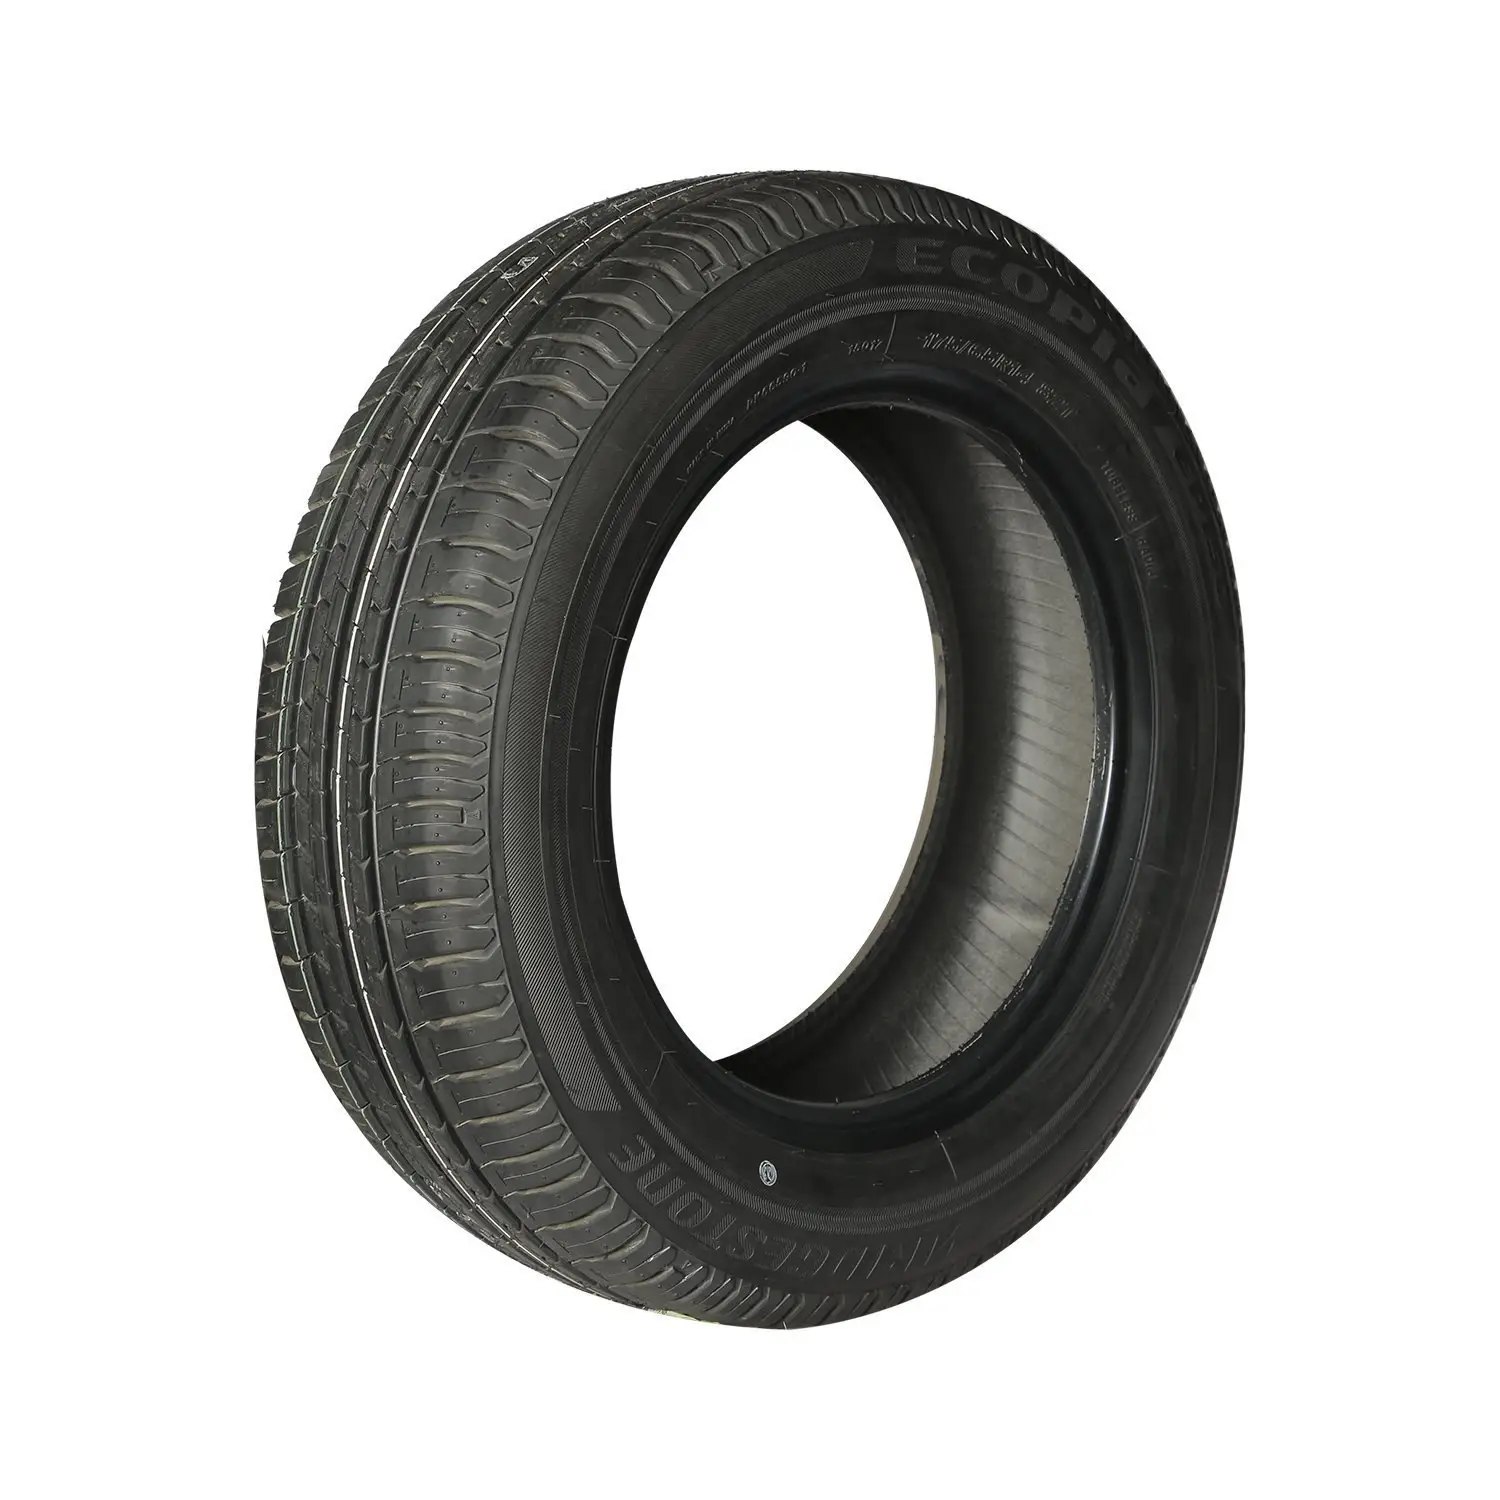 Preço direto de fábrica 14 15 16 17 18 18 polegadas pneus de carros usados/pneus de carros novos de todos os tamanhos por atacado dos EUA